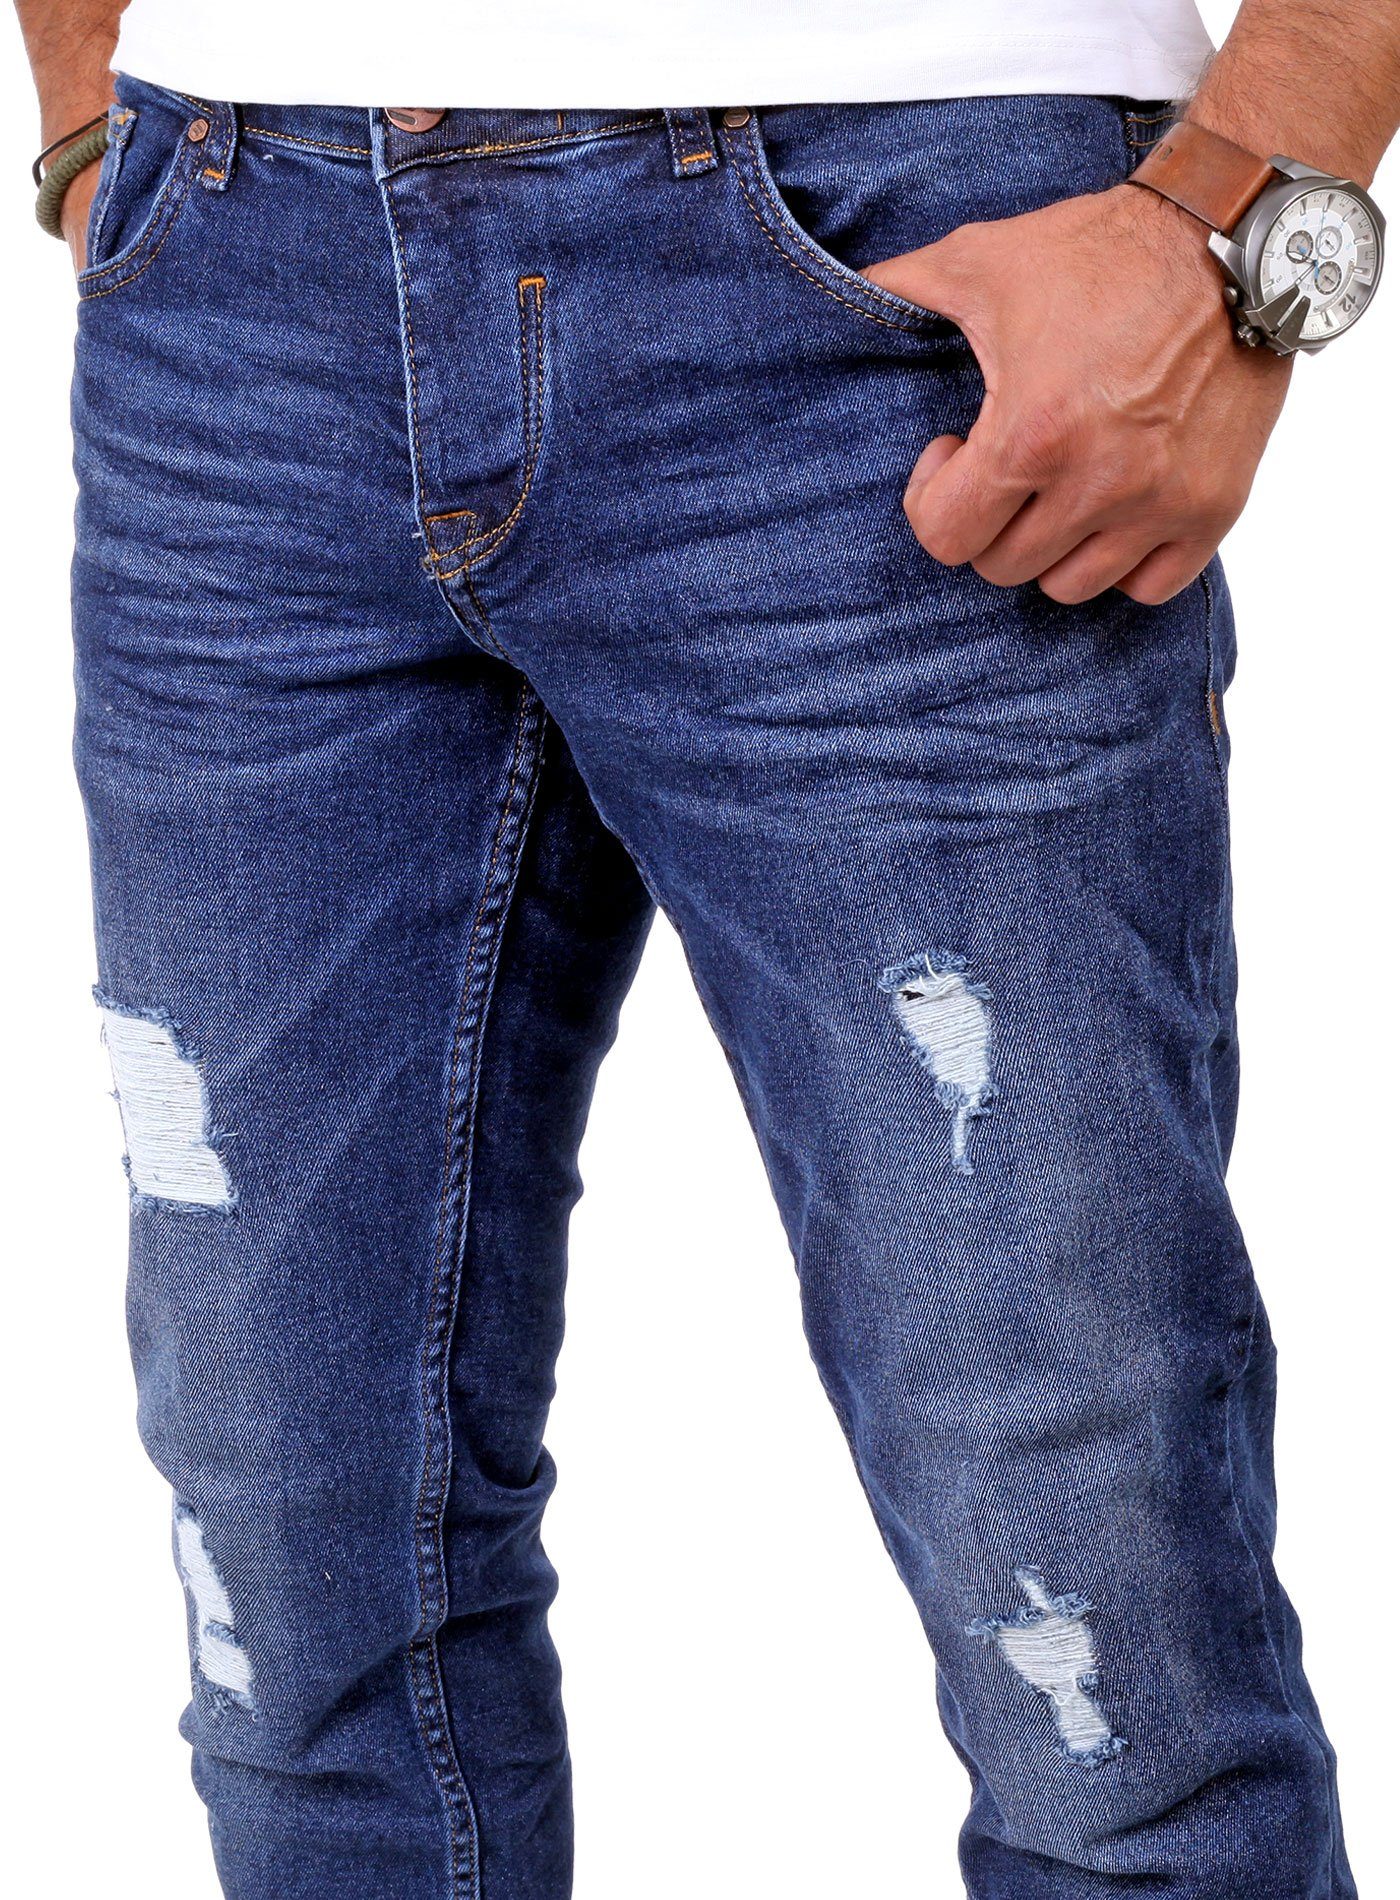 Reslad Destroyed-Jeans Reslad Look blau Destroyed Jeans-Hose Herren Fit Slim Denim Jeans Stretch Destroyed Slim Look Jeans Fit